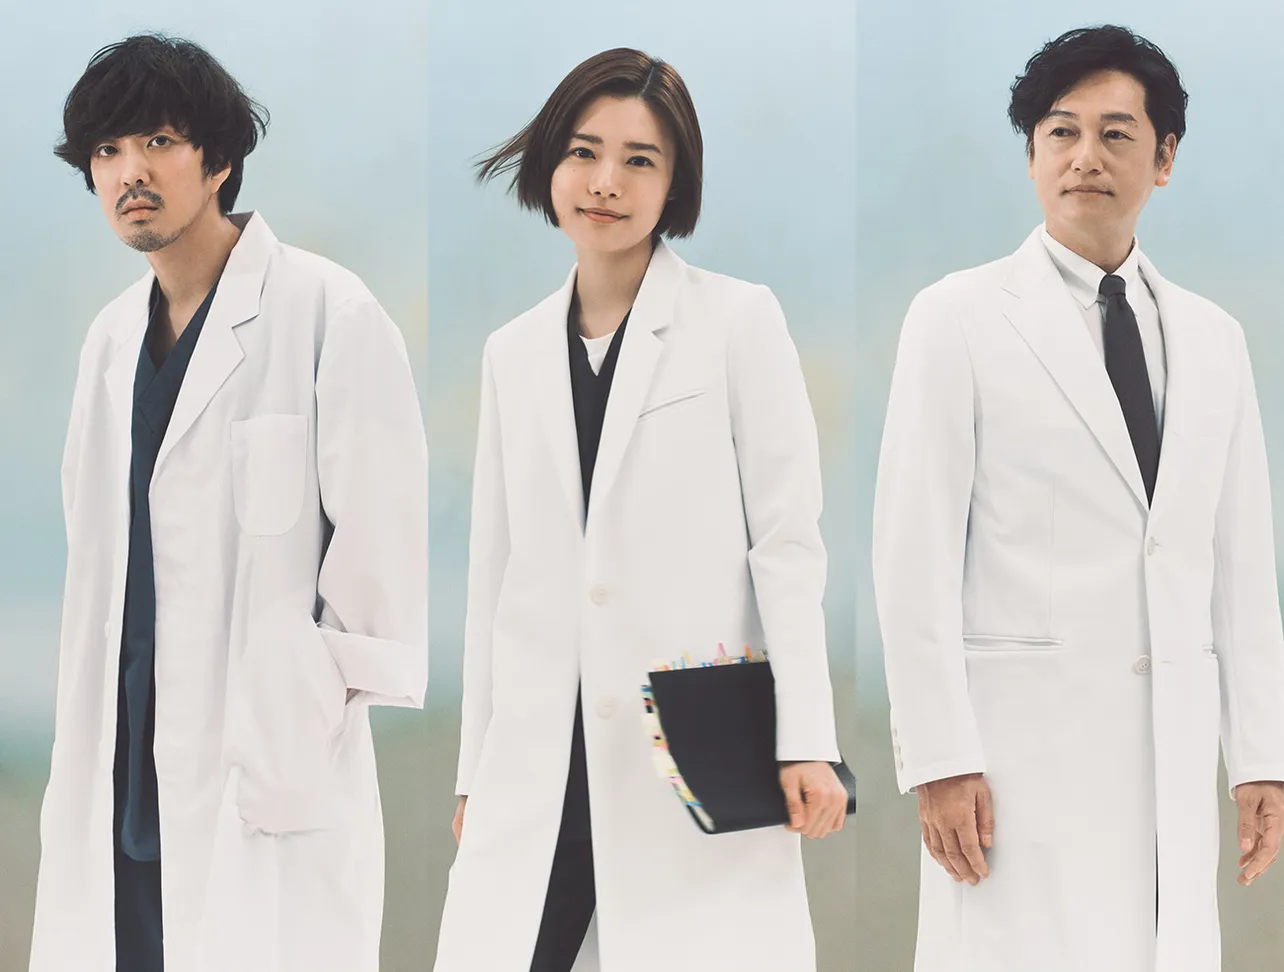 【写真】医師役で白衣を身にまとう(左から)若葉竜也、杉咲花、井浦新